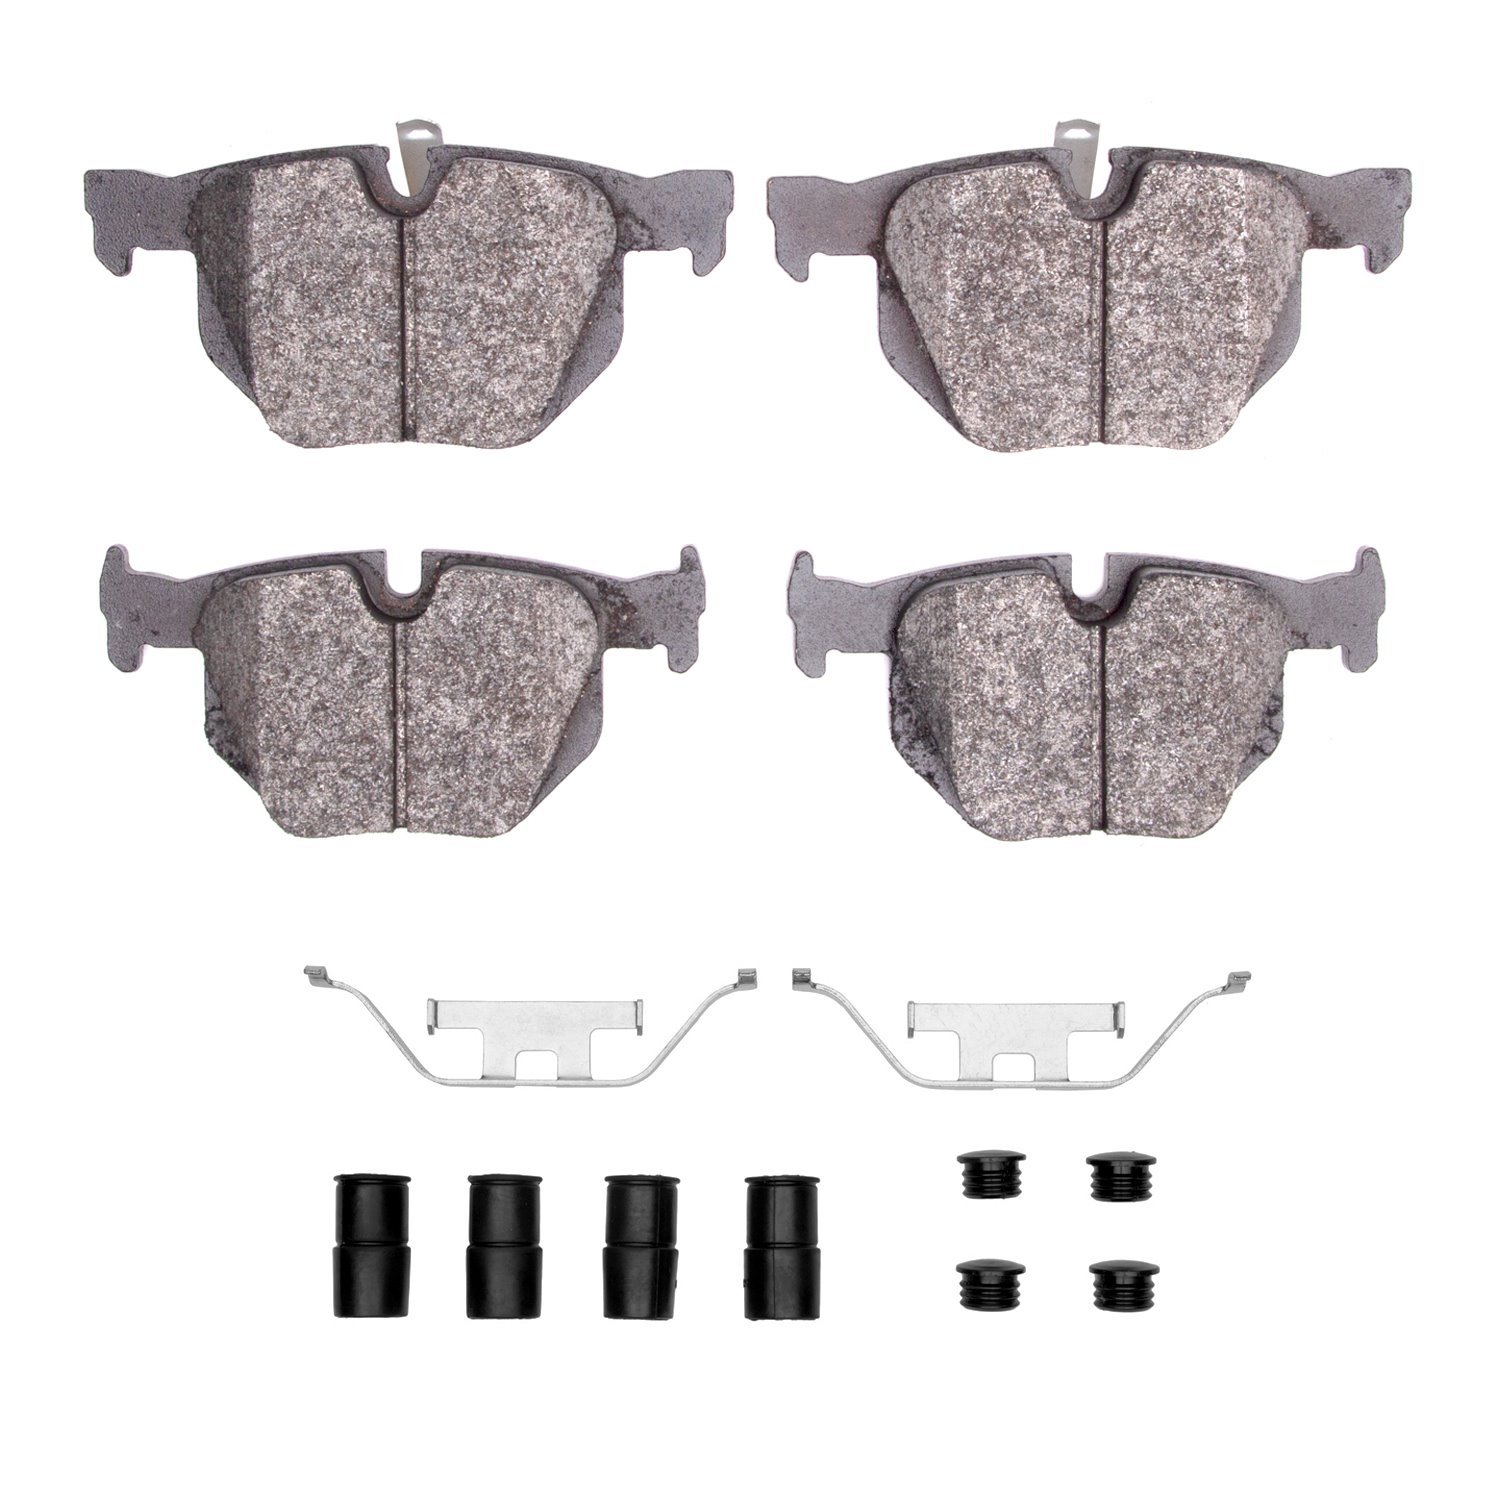 1310-1170-01 3000-Series Ceramic Brake Pads & Hardware Kit, 2006-2015 BMW, Position: Rear